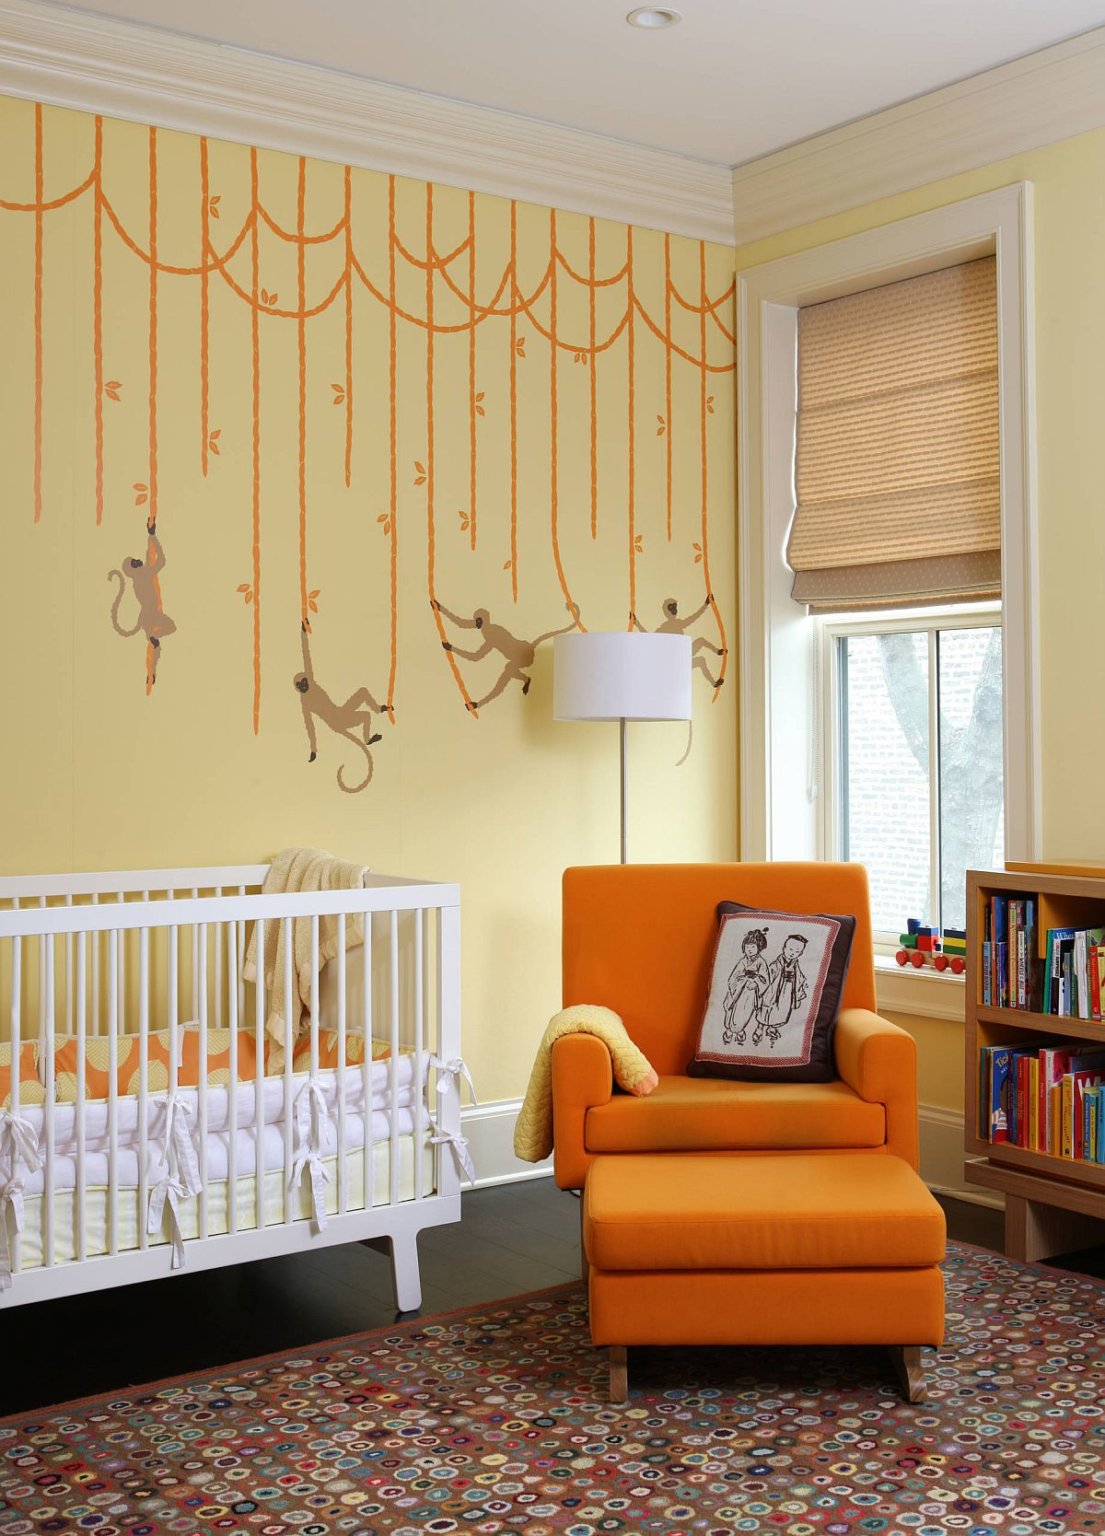 hình ảnh phòng ngủ của trẻ tông màu vàng mơ tươi sáng, họa tiết cam, giường cũi, ghế bành màu cam